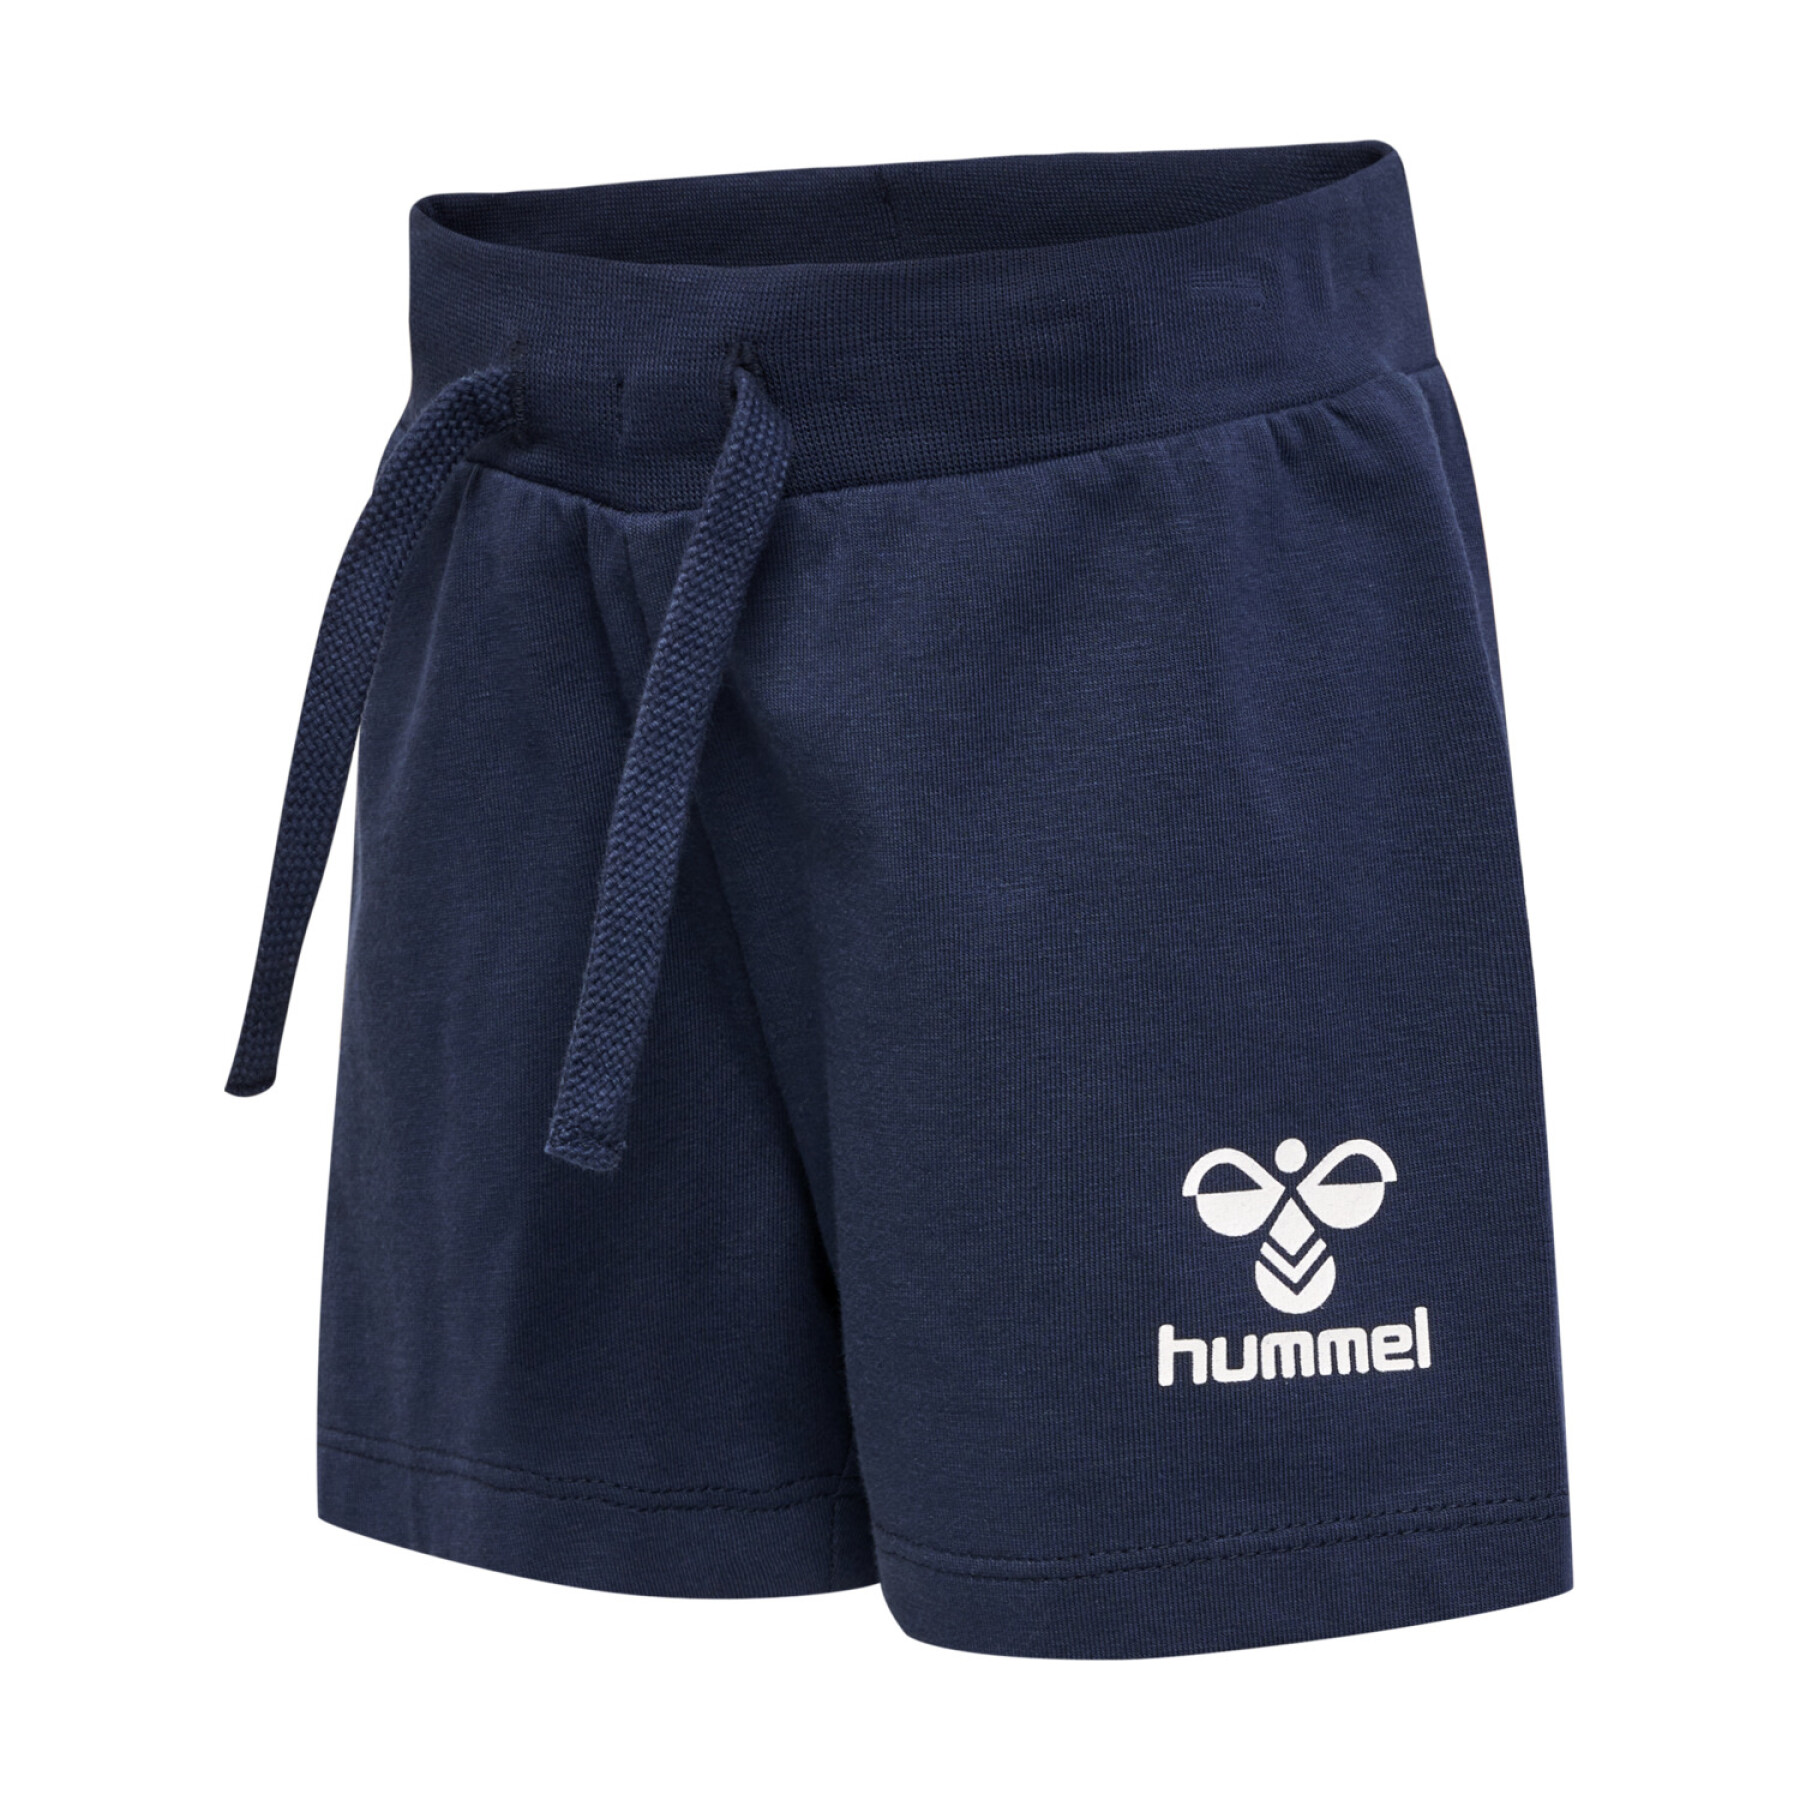 Baby boy shorts Hummel Joc